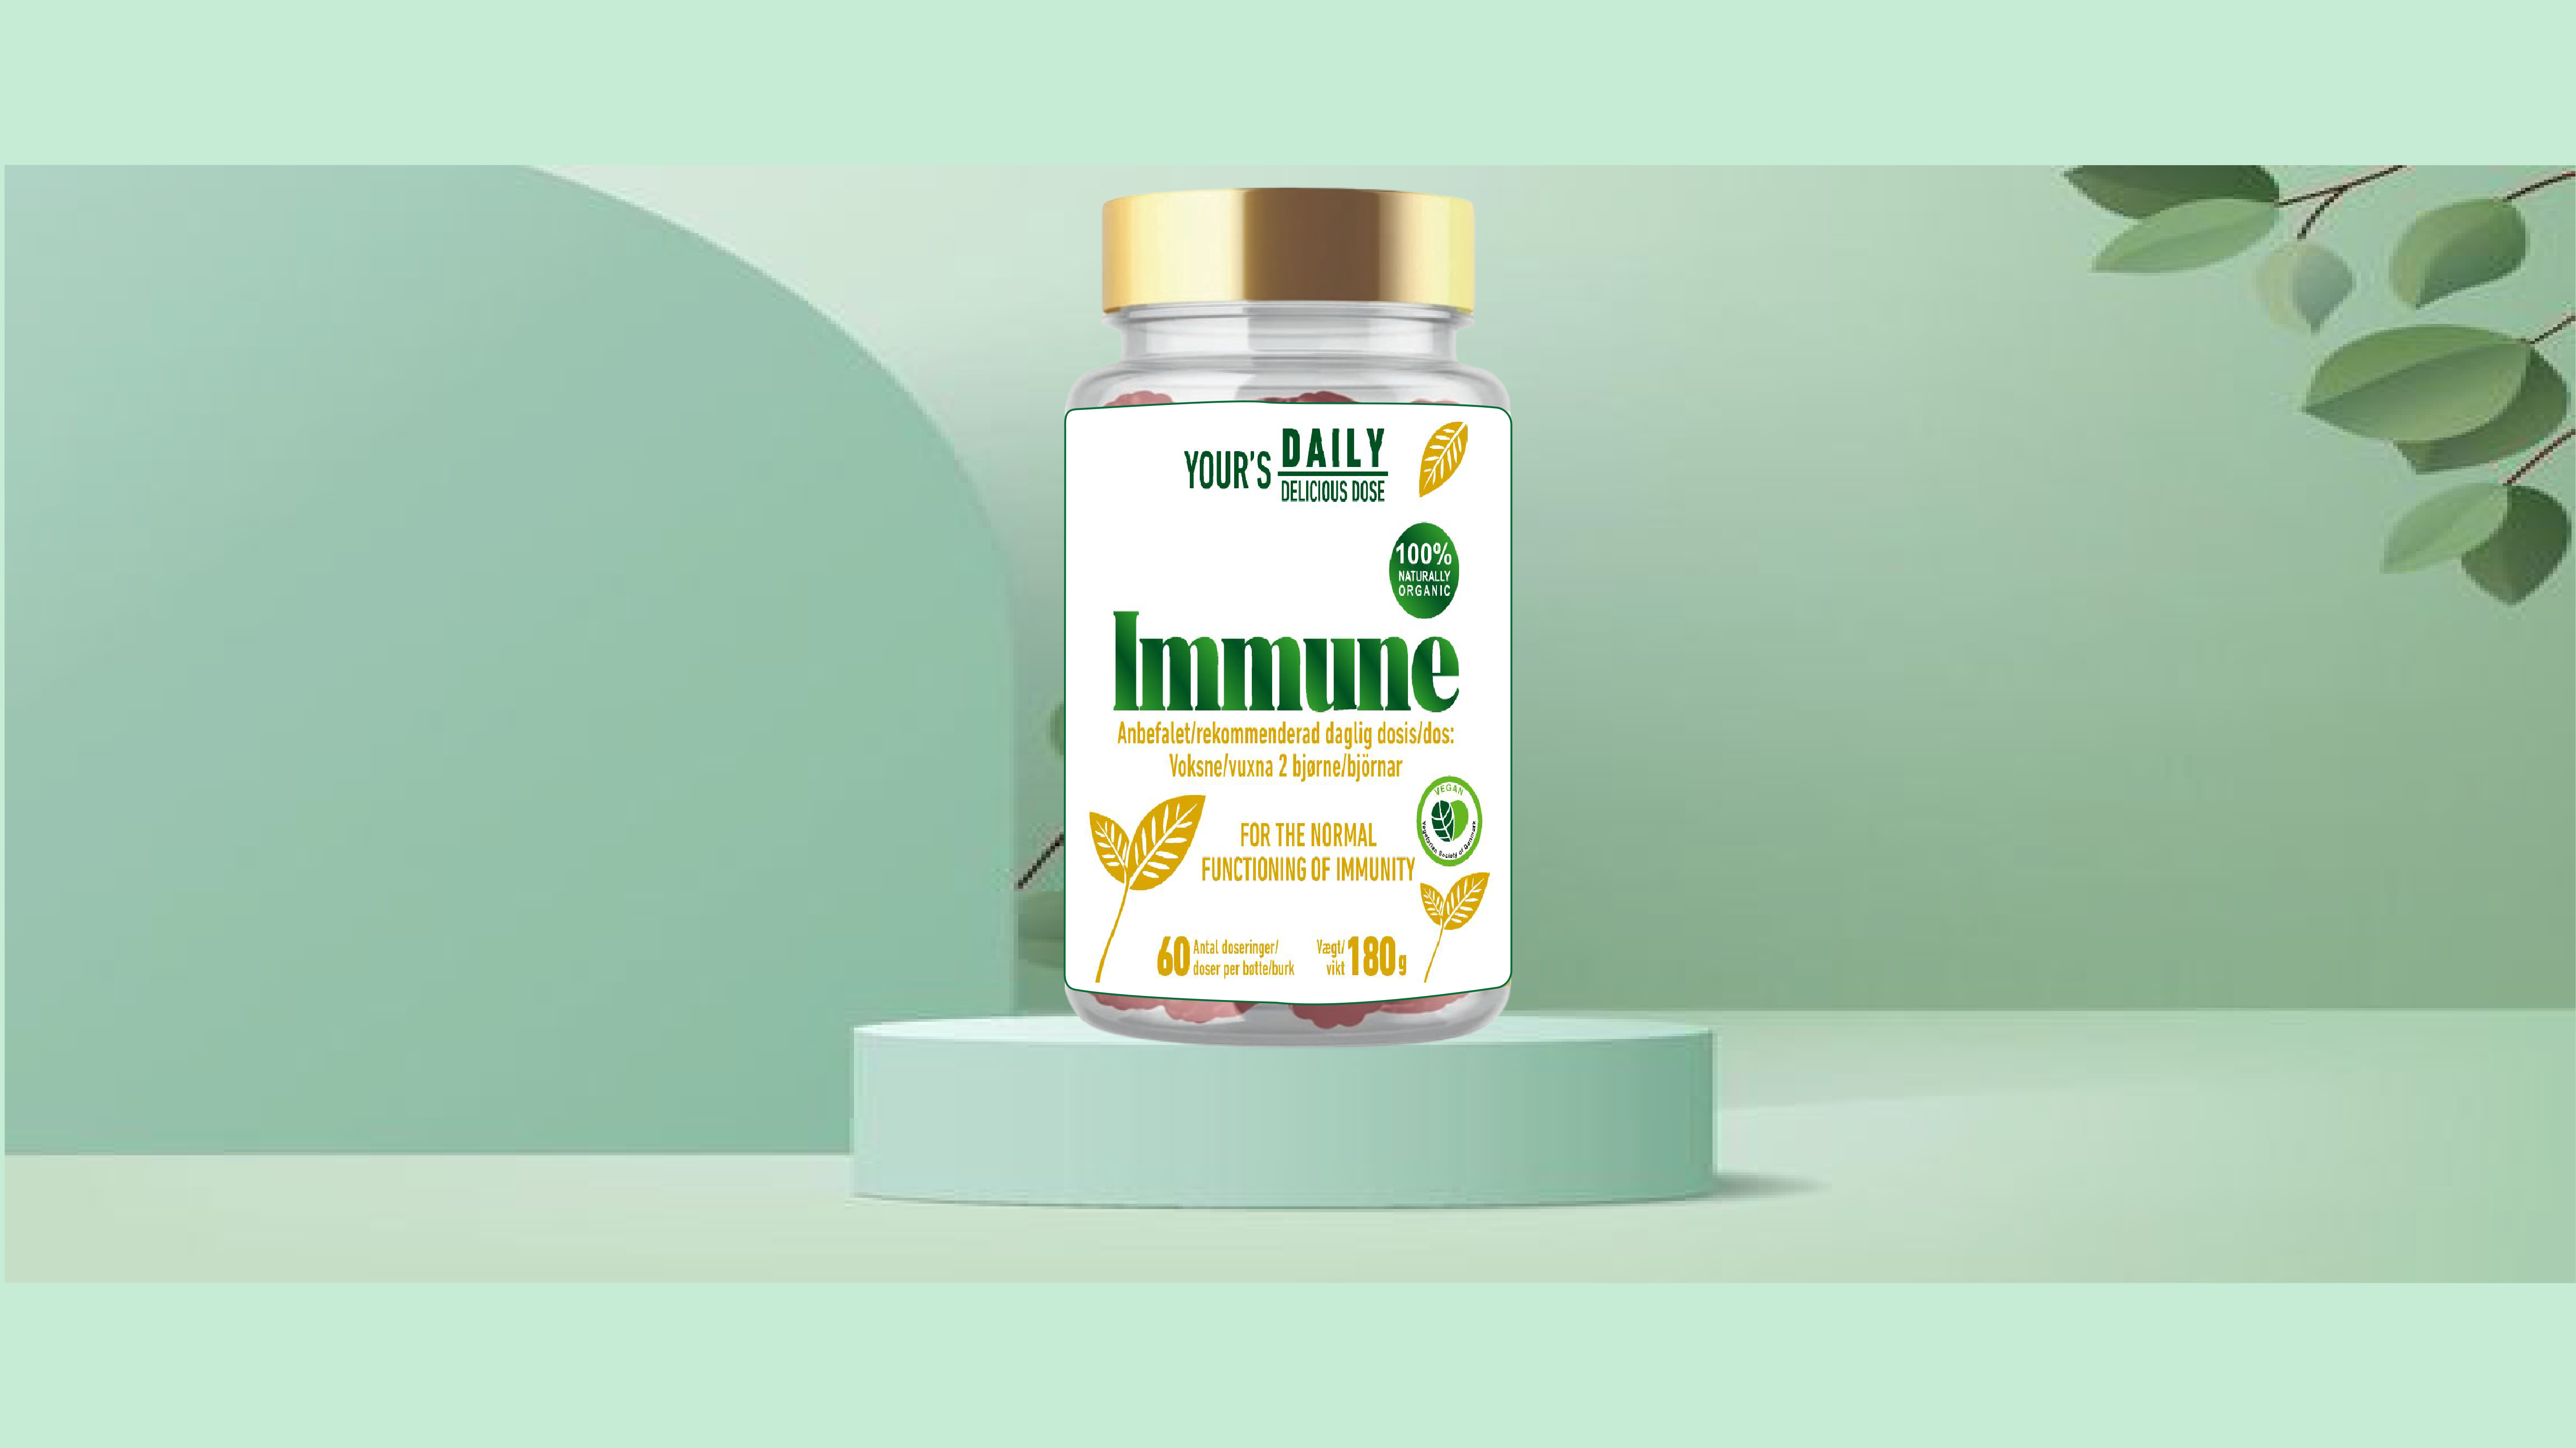 Immune image